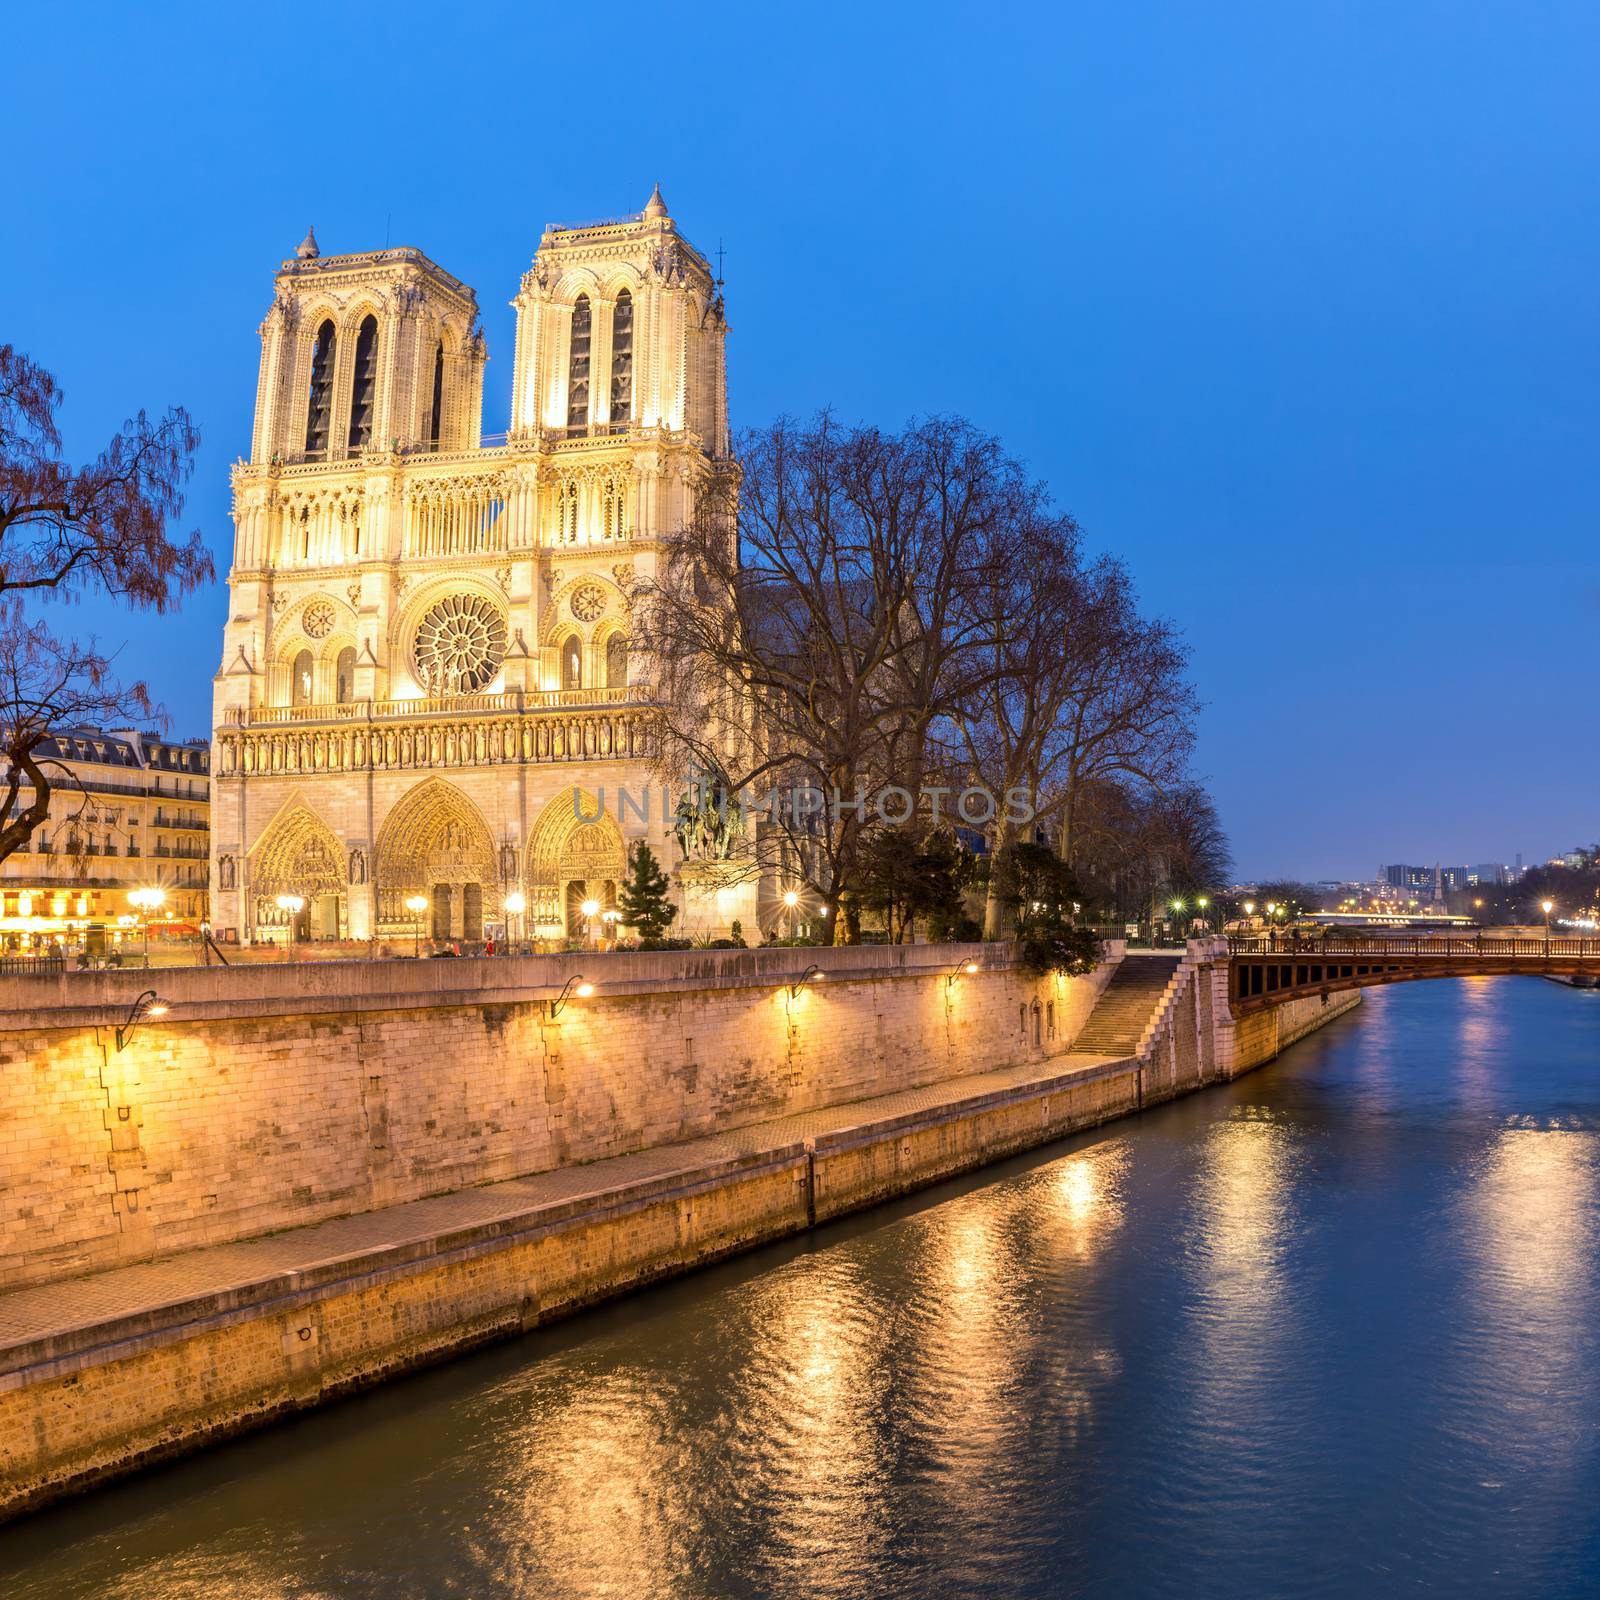 Paris Notre Dame at dusk by vichie81